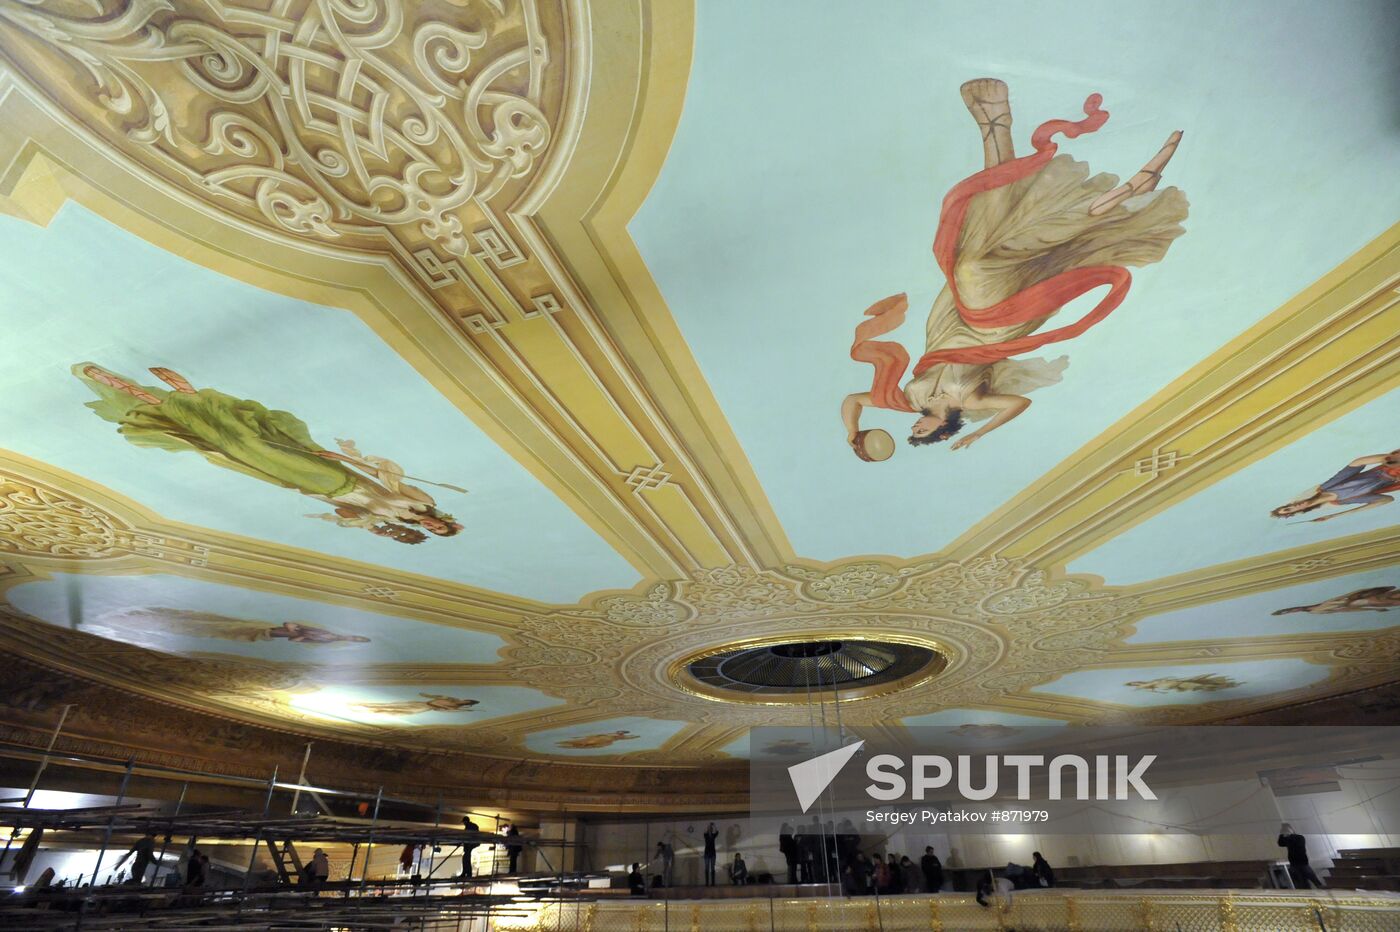 Bolshoi ceiling restoration completed